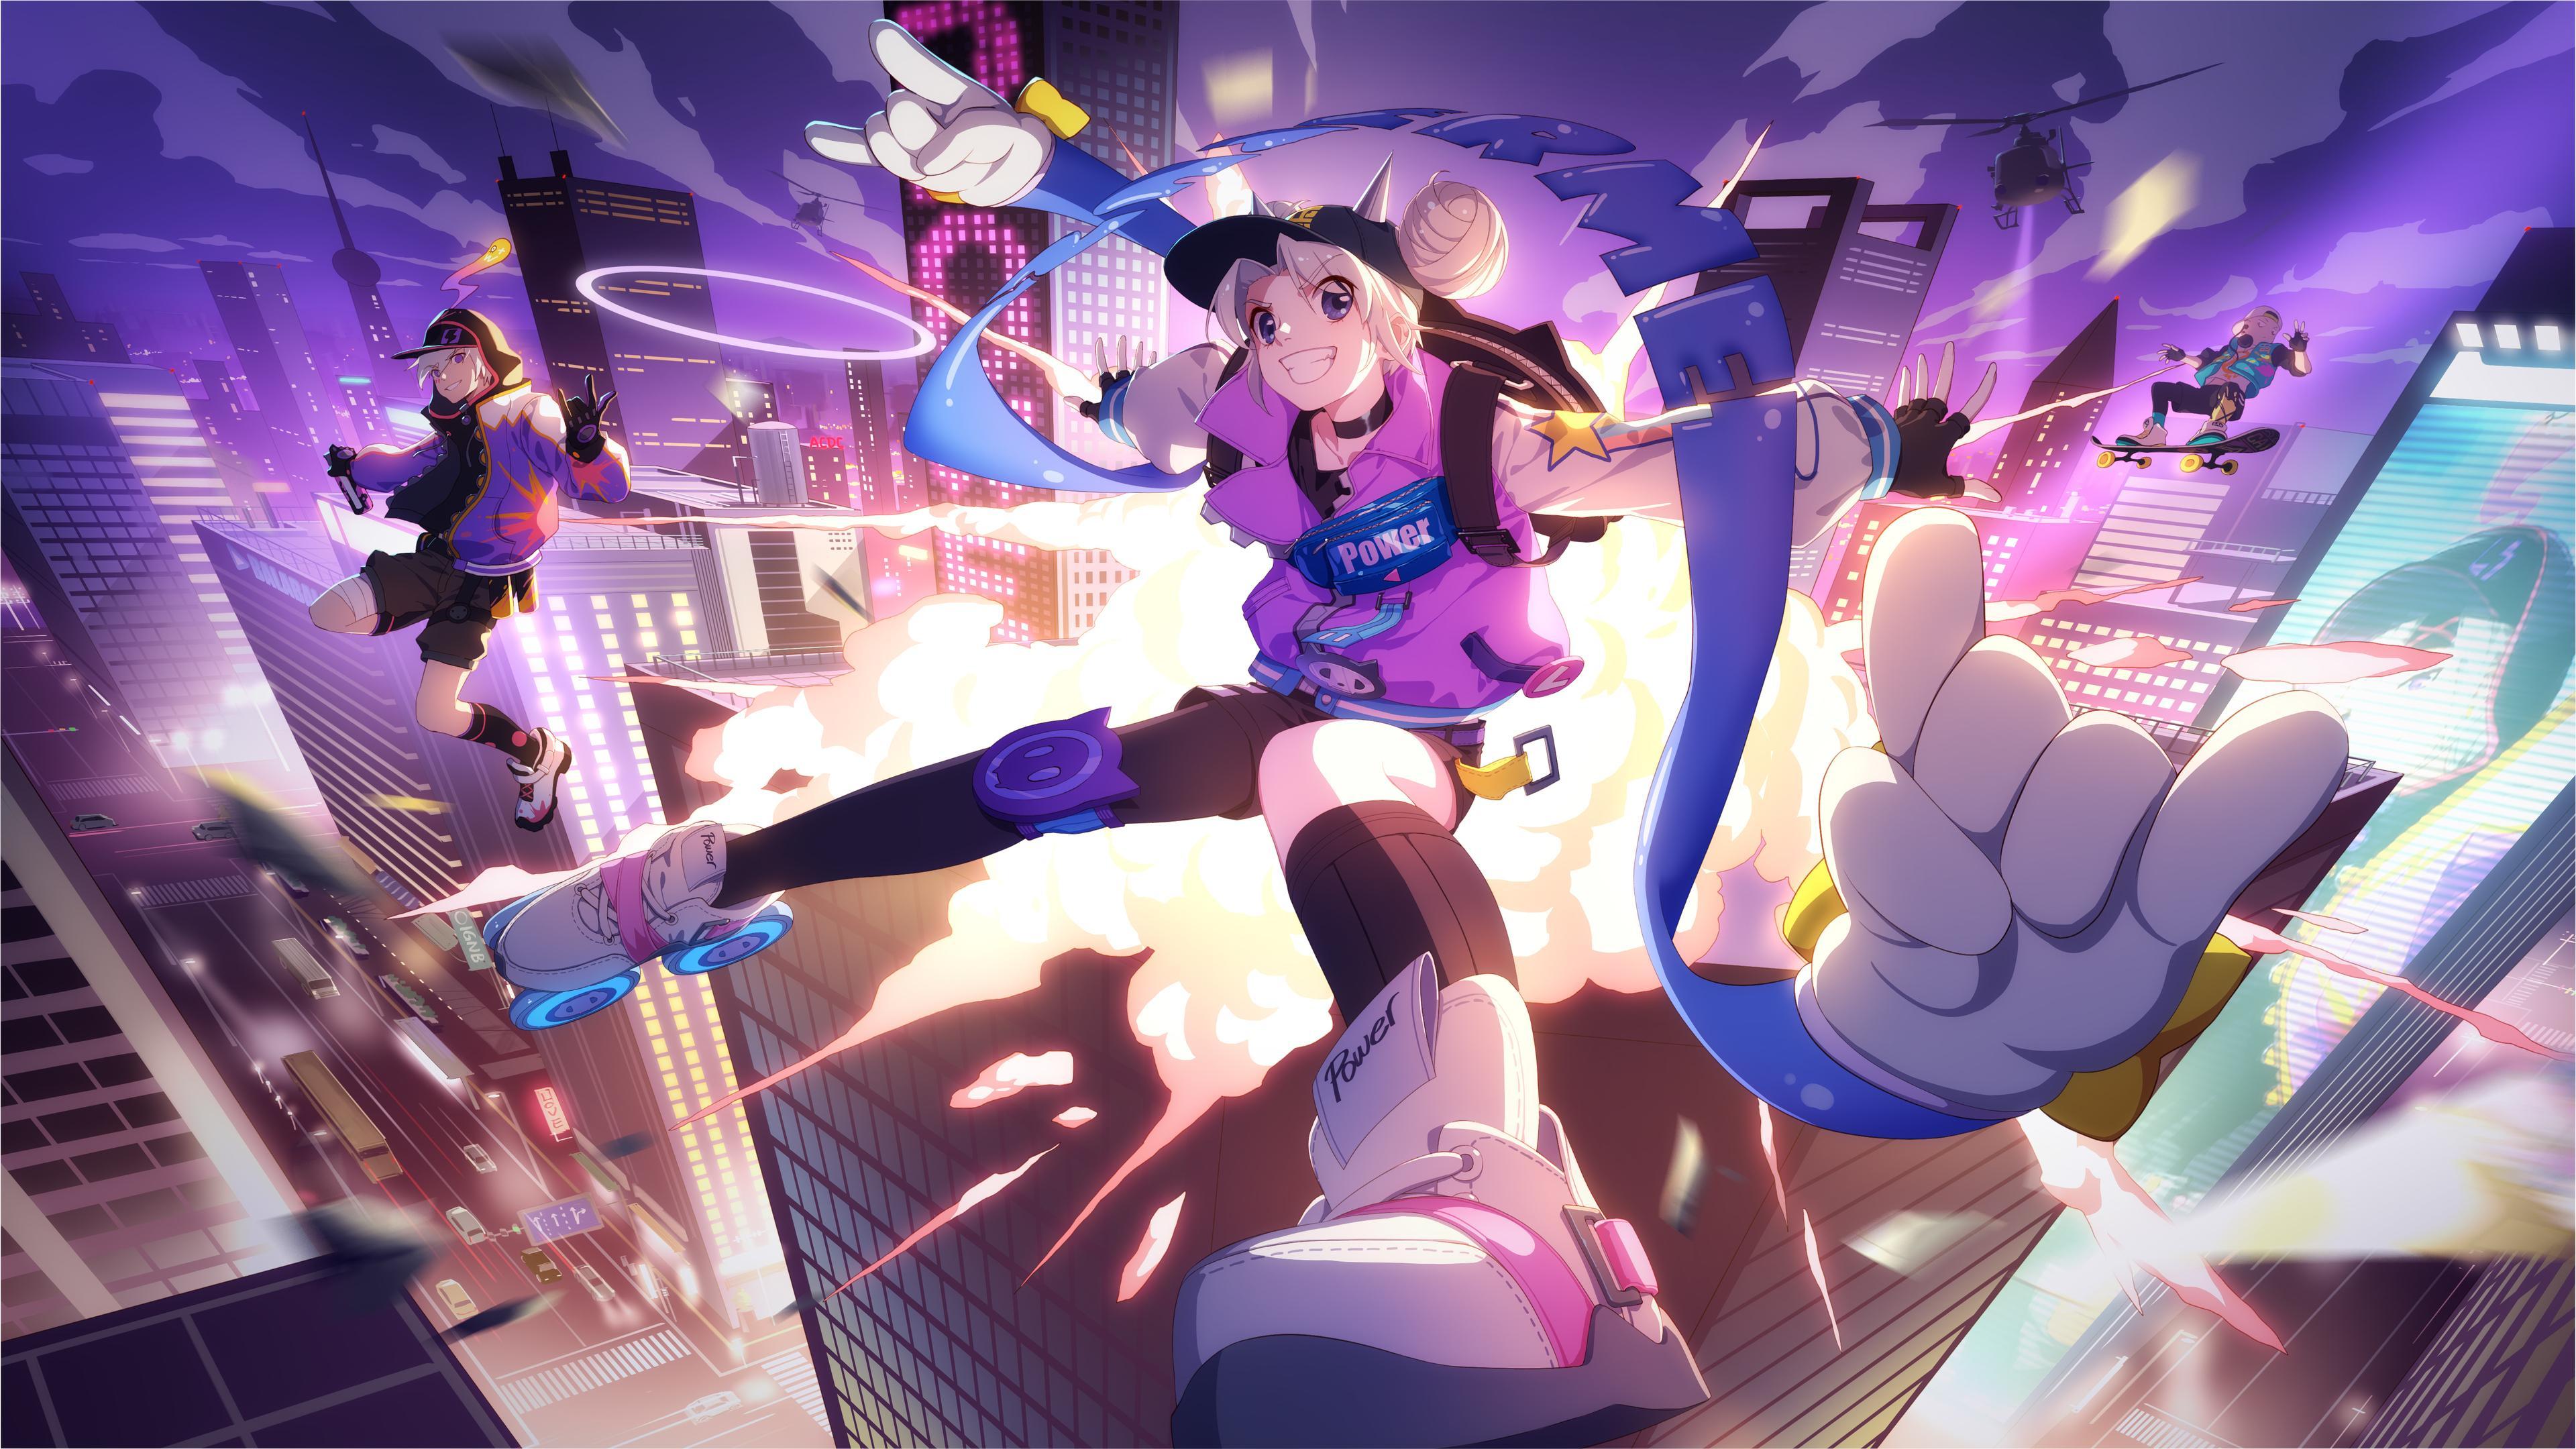 Wallpaper 4k Anime Sneaker Girl Illustration 4k 4k